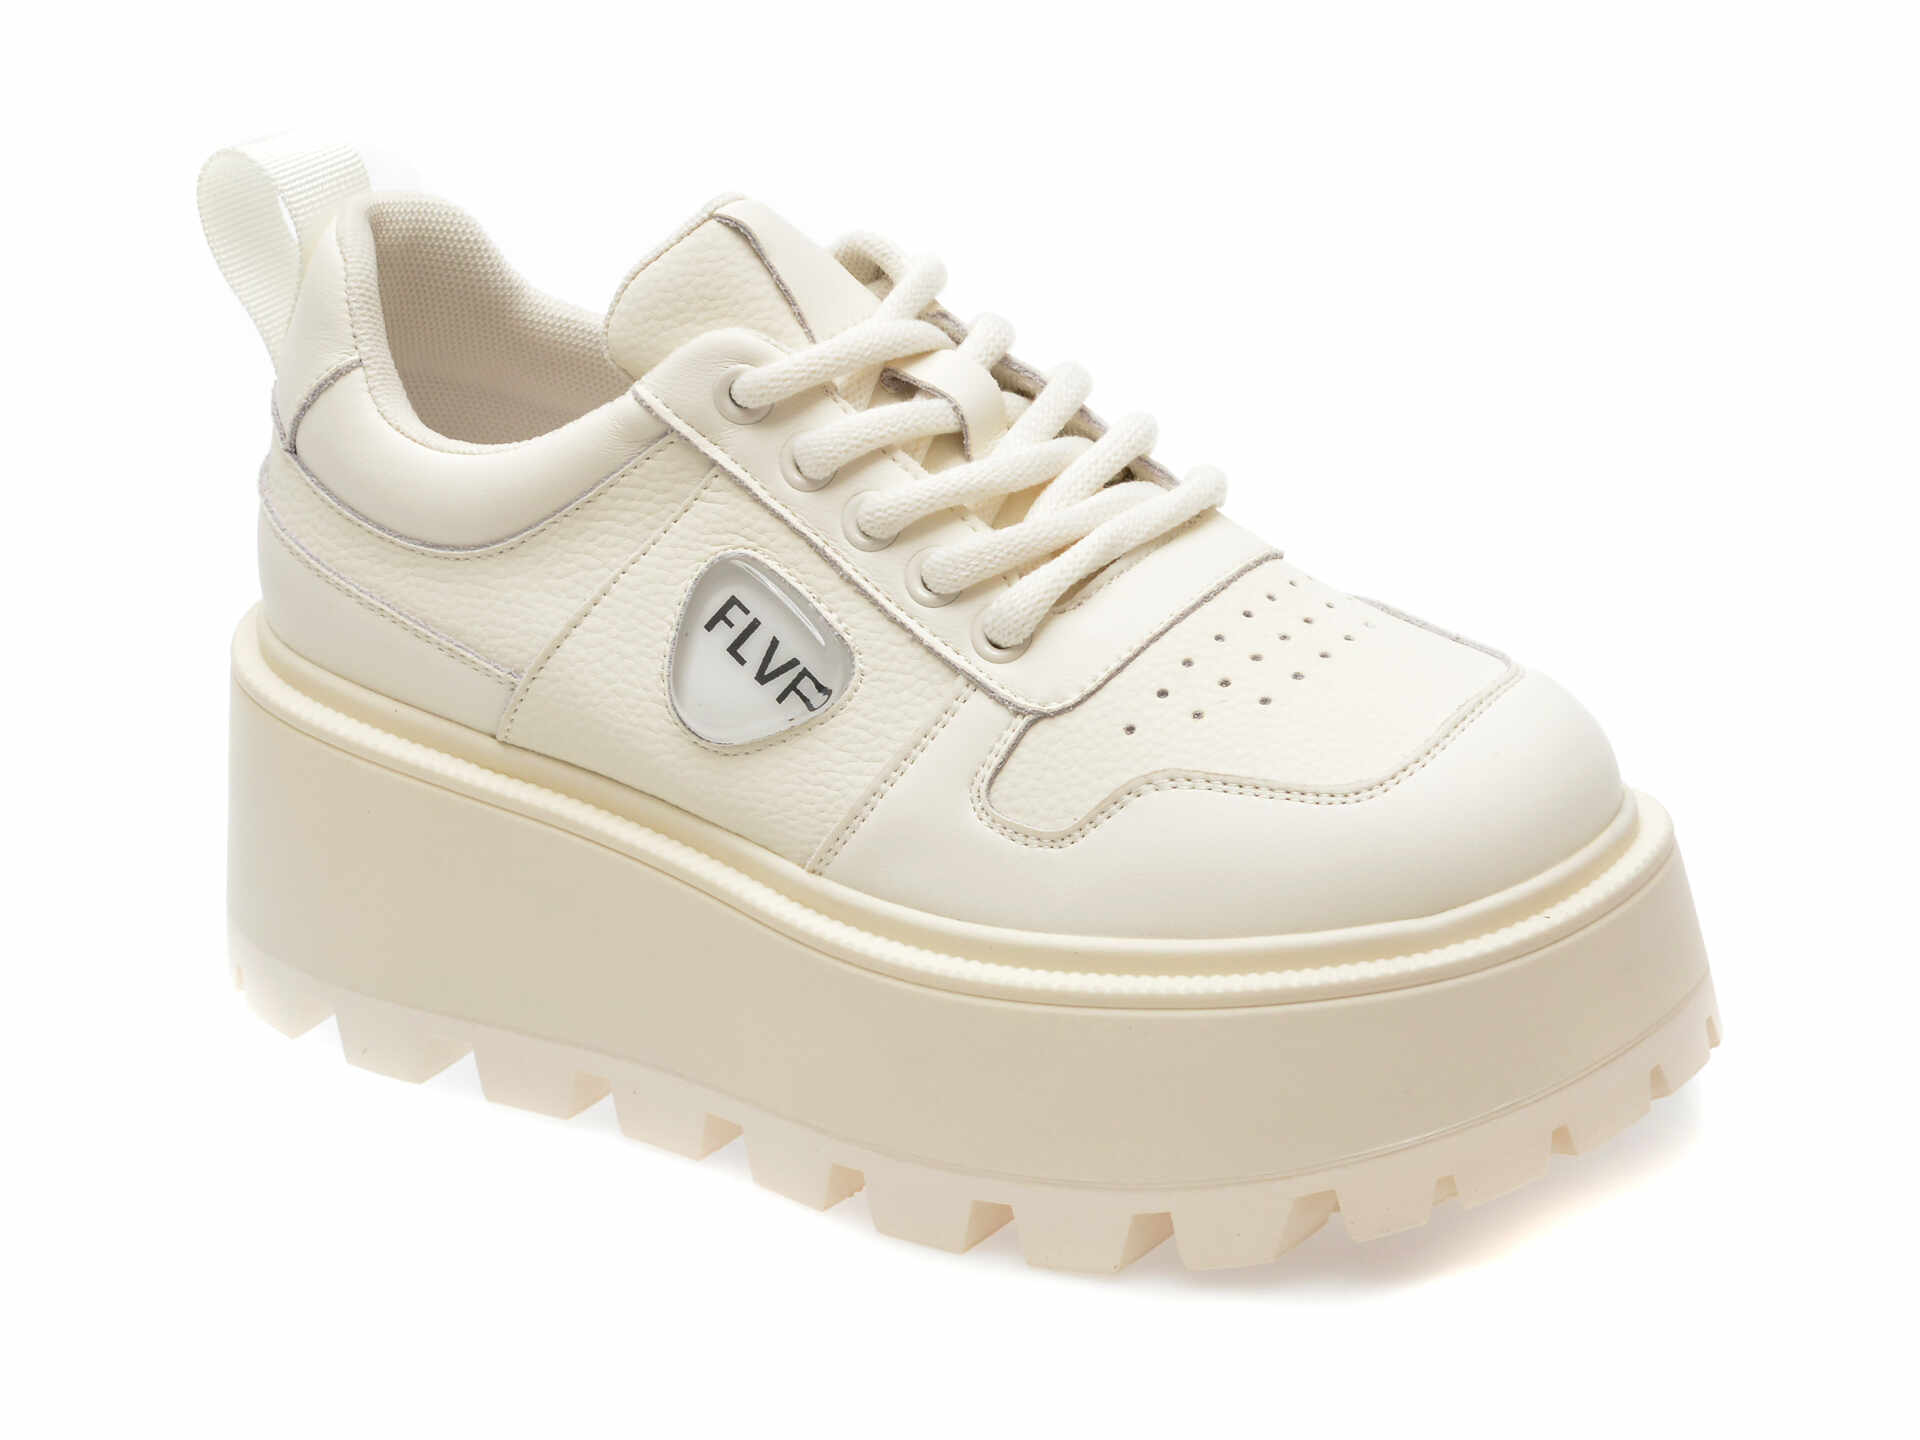 Pantofi casual FLAVIA PASSINI albi, 1050, din piele naturala